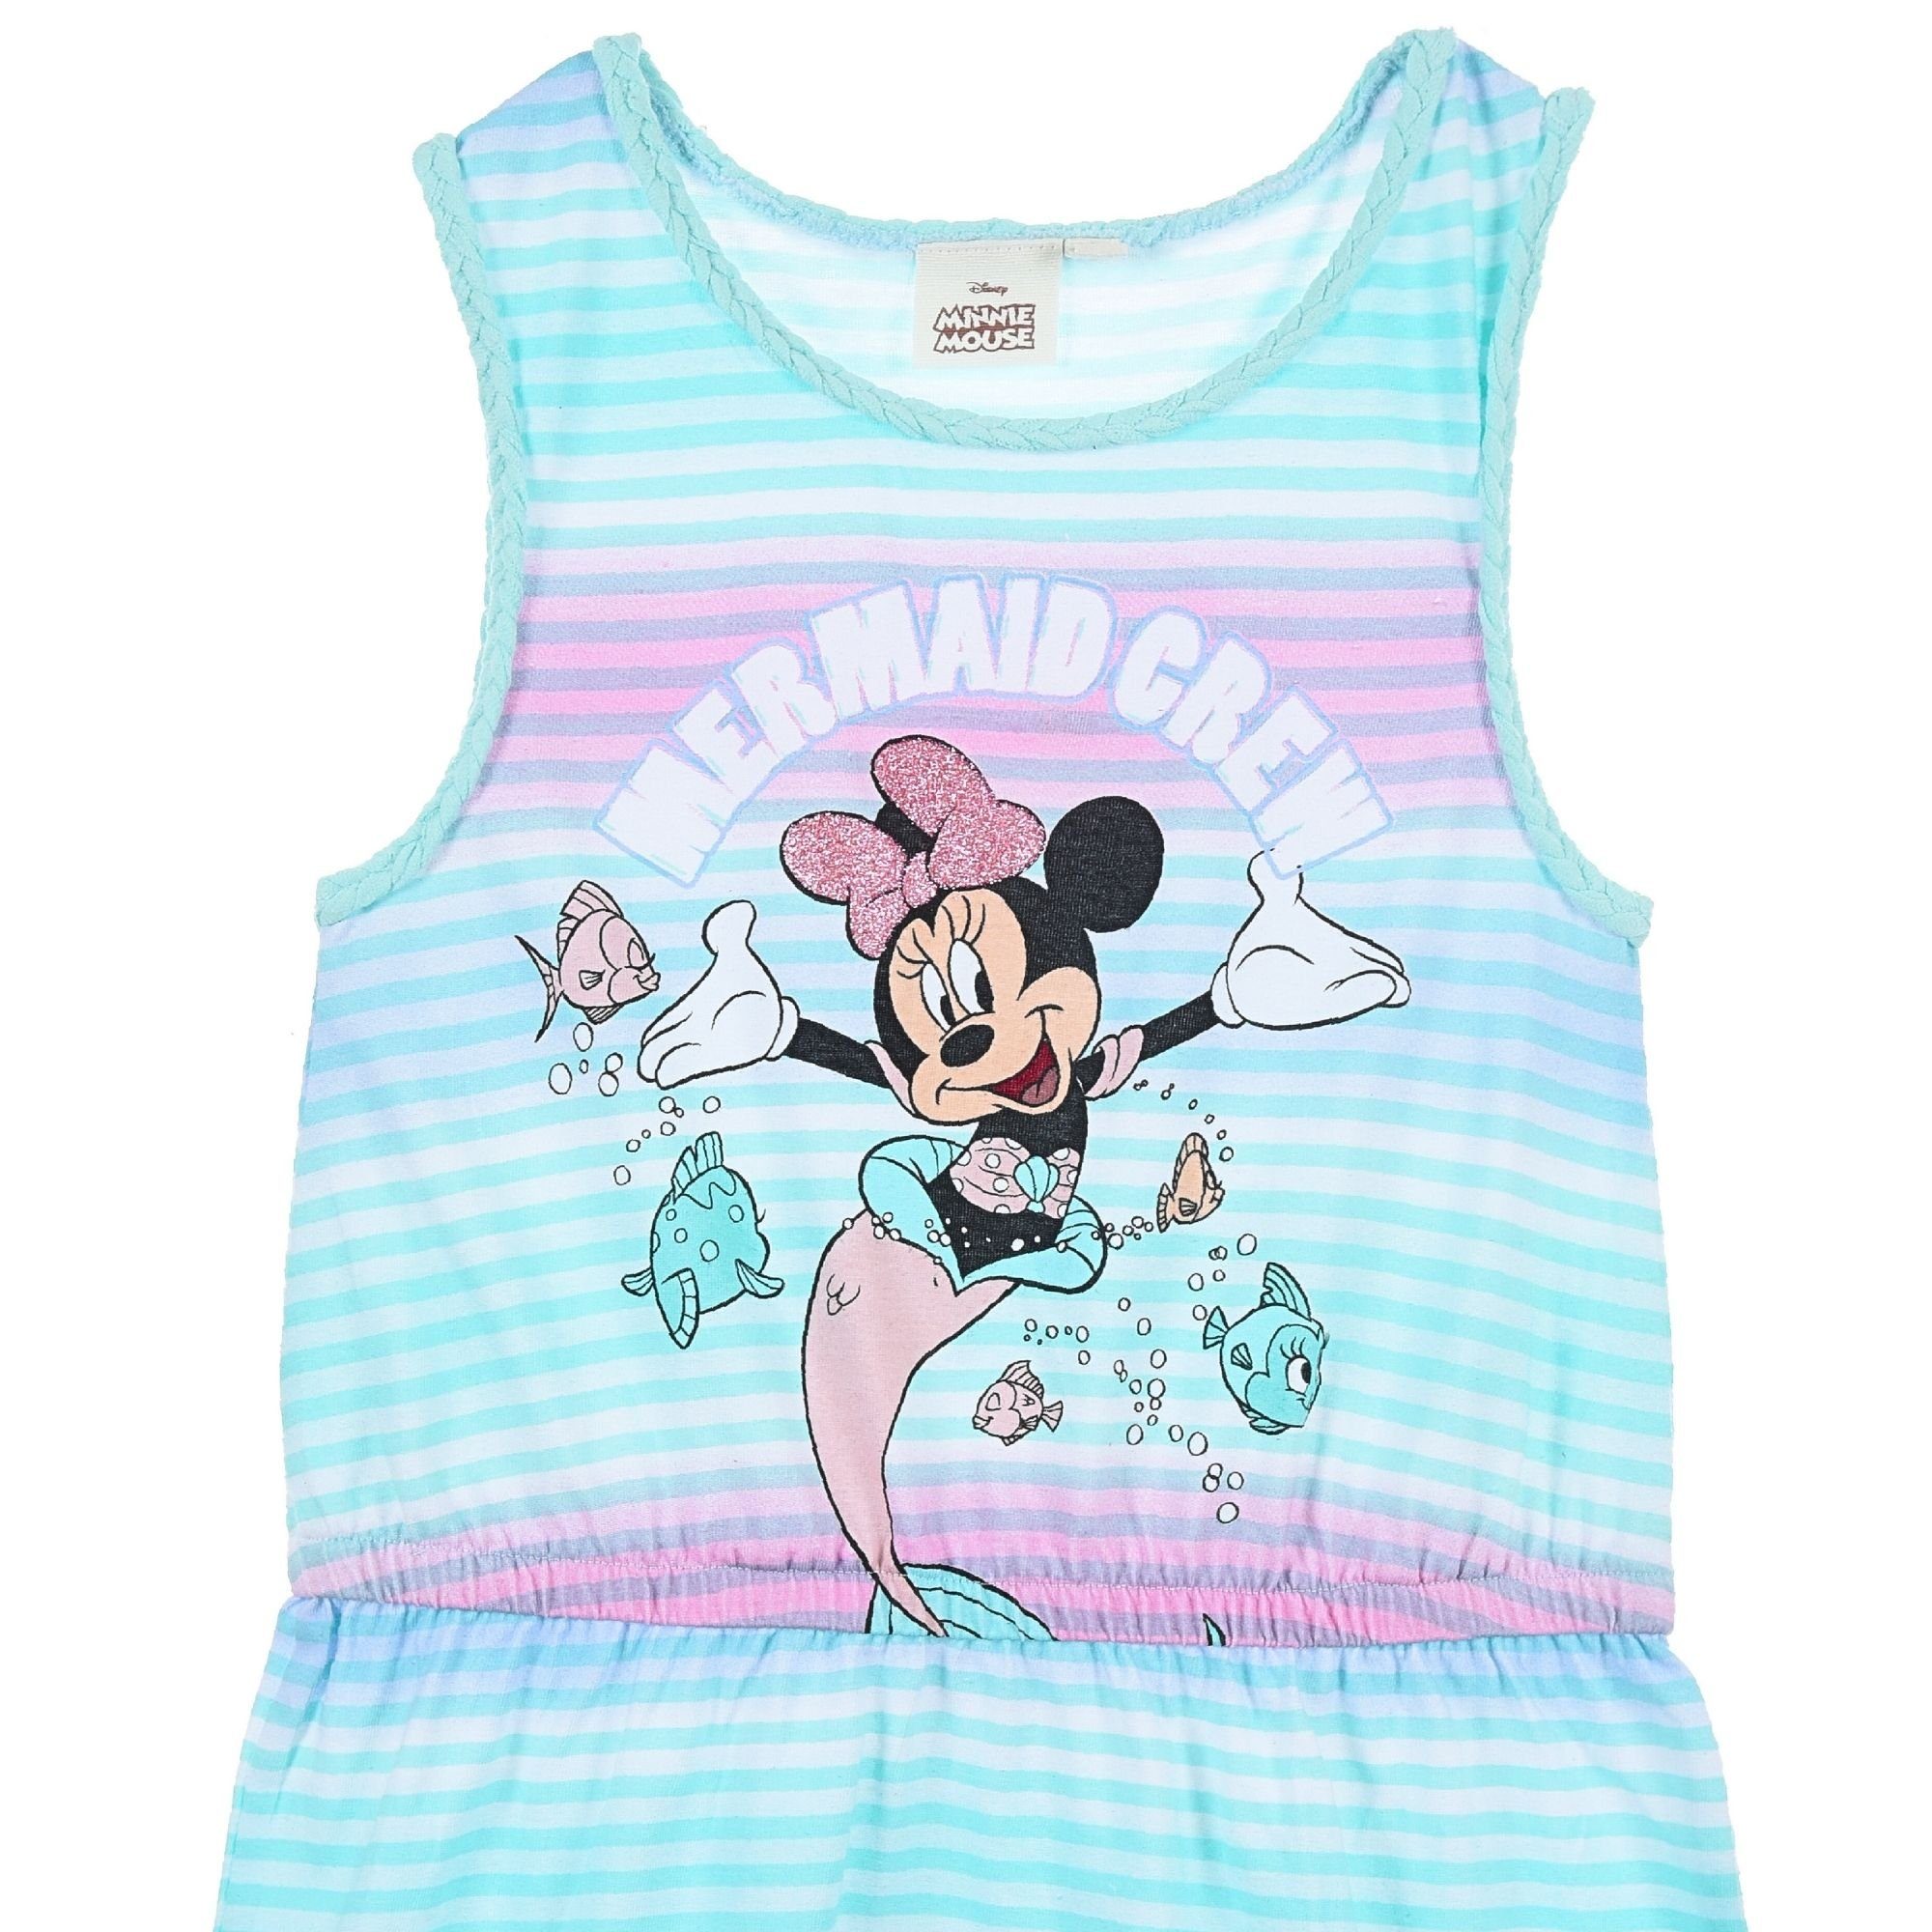 Sommerkleid Mädchen Crew Jerseykleid 98-128 Mouse Disney Minnie Gr. Mermaid Minnie Türkis Maus- cm